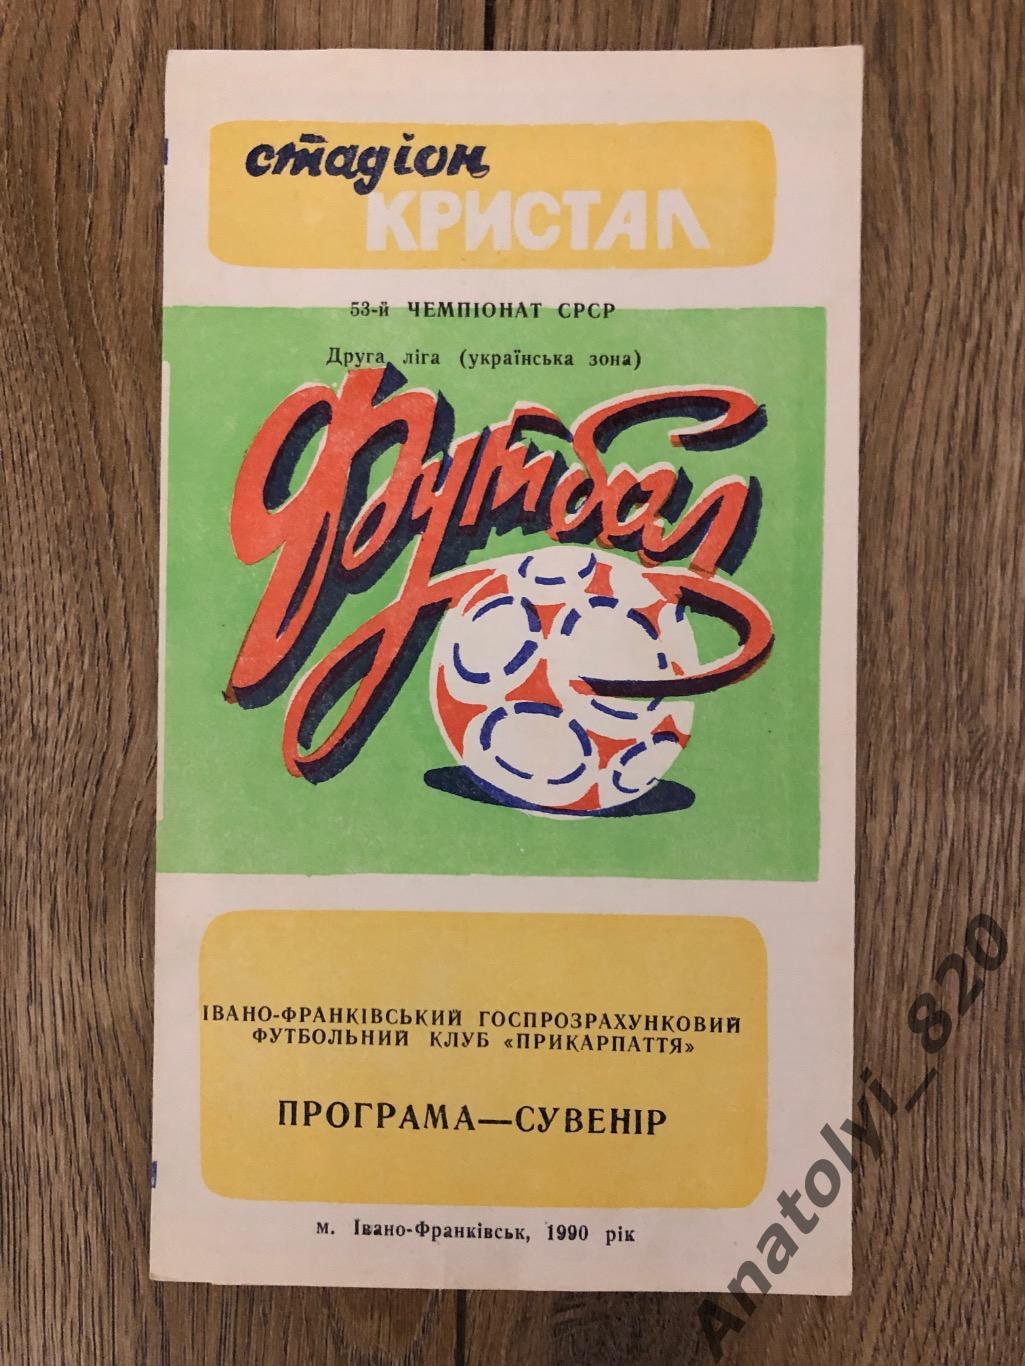 Прикарпатье Ивано-Франковск, программа сувенир 1990 г.